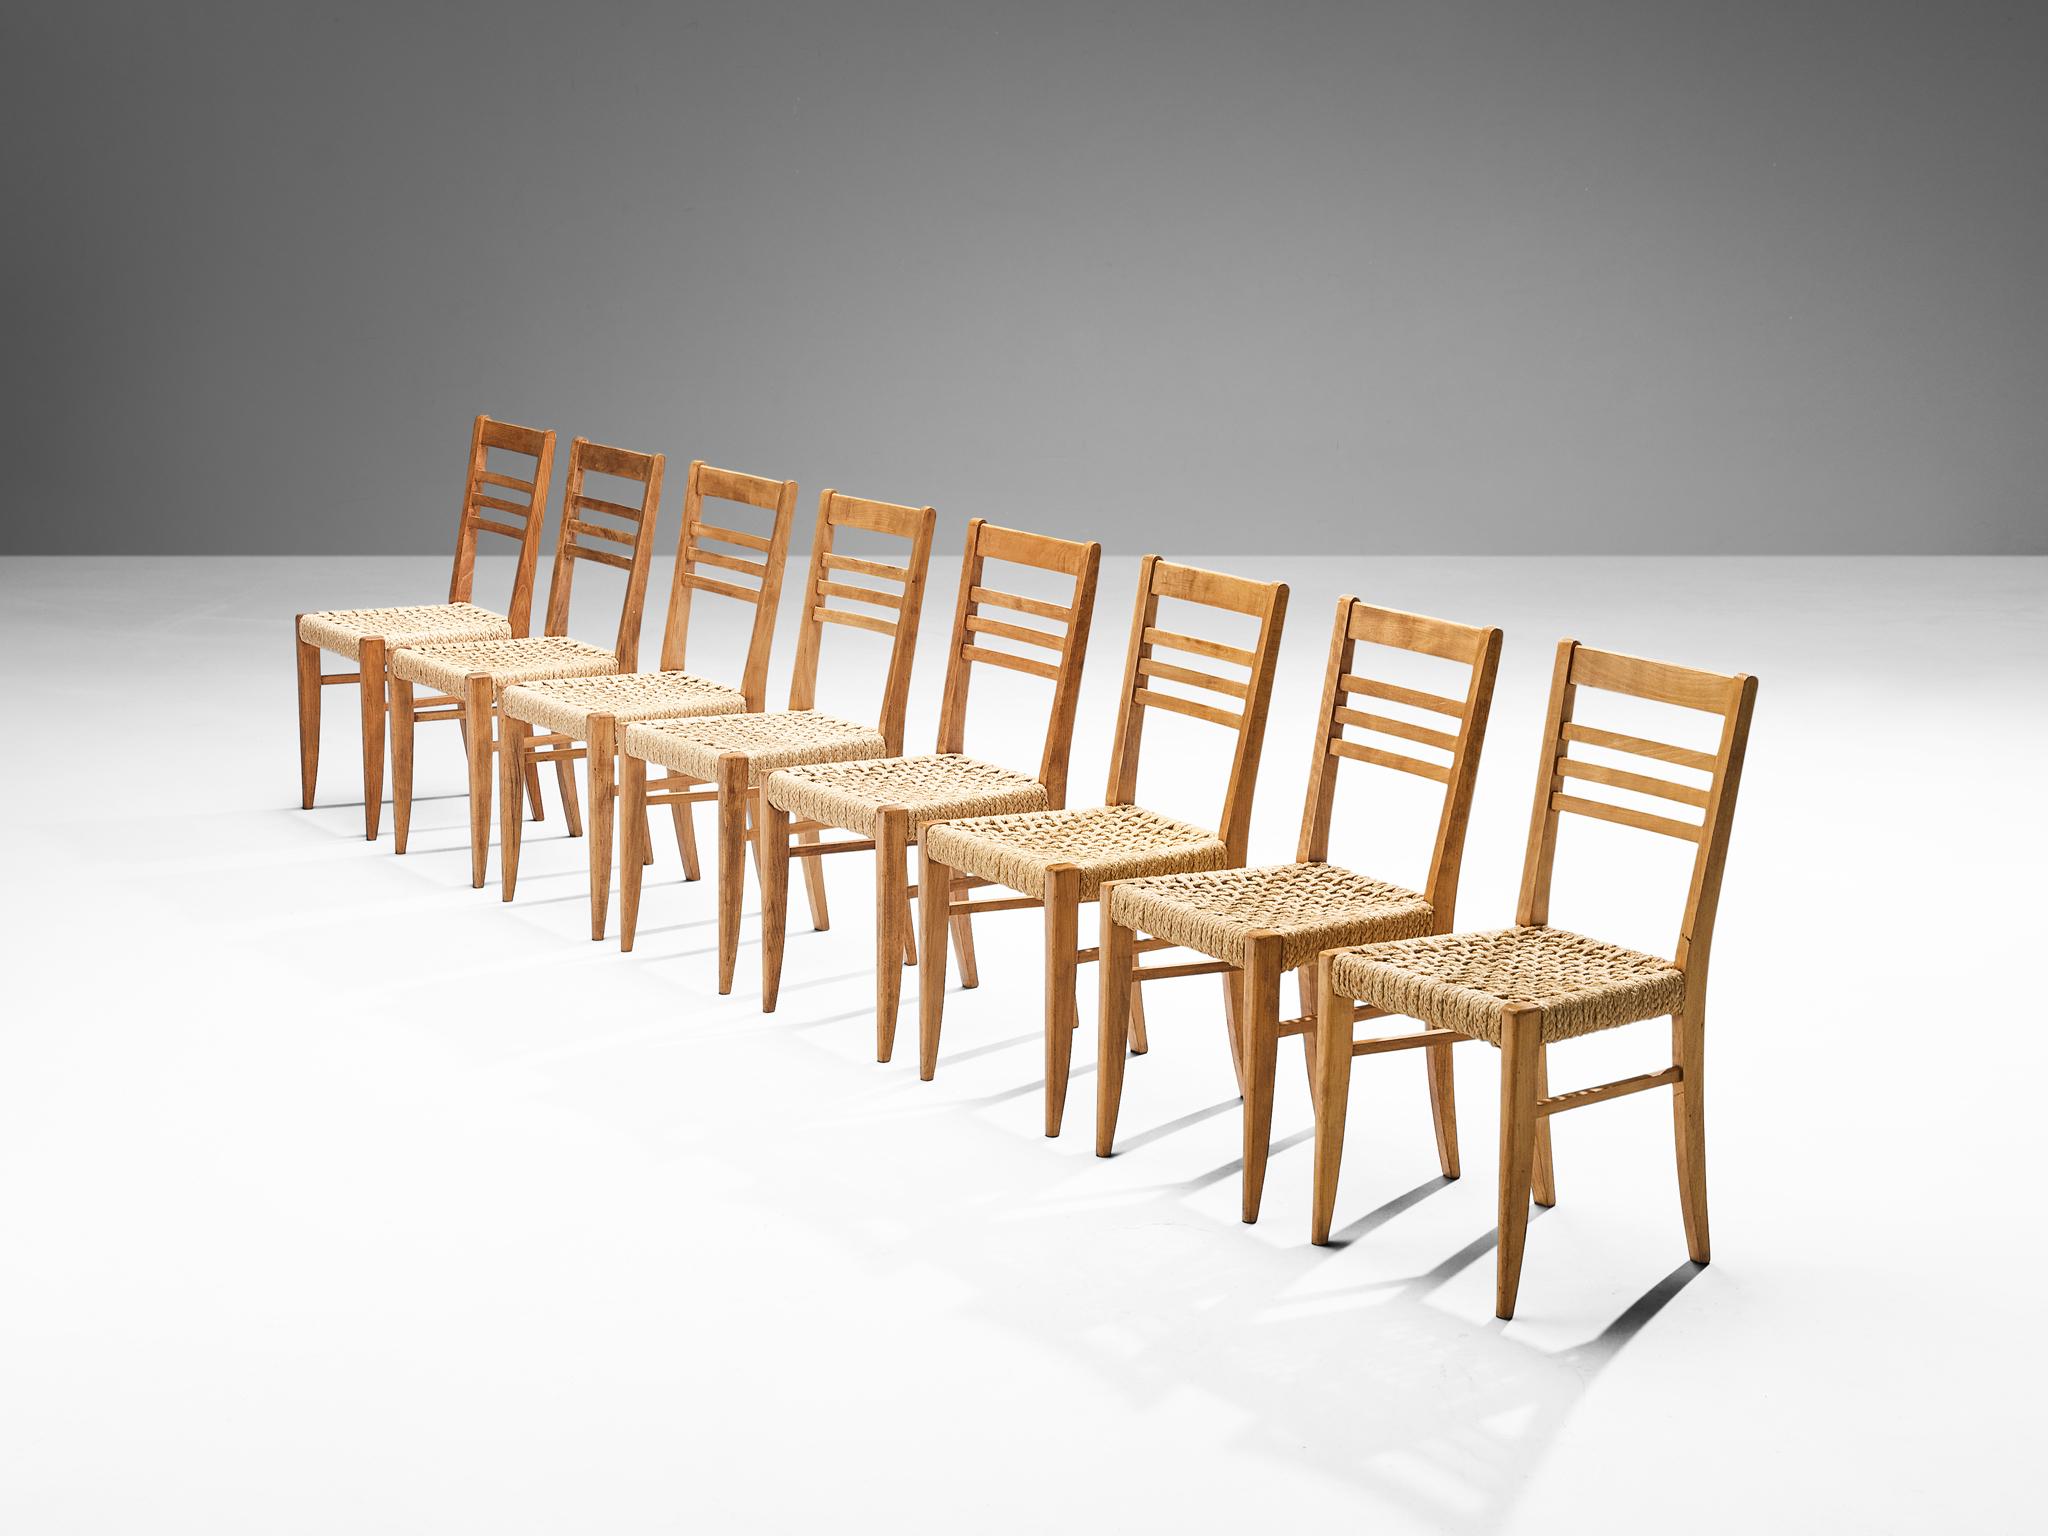 Adrien Audoux et Frida Minet pour Vibo, ensemble de huit fauteuils, hêtre, corde de chanvre, France, fin des années 1940. 

Ensemble de huit chaises de salle à manger naturalistes conçues par Adrien Audoux et Frida Minet. Les sièges sont en chanvre